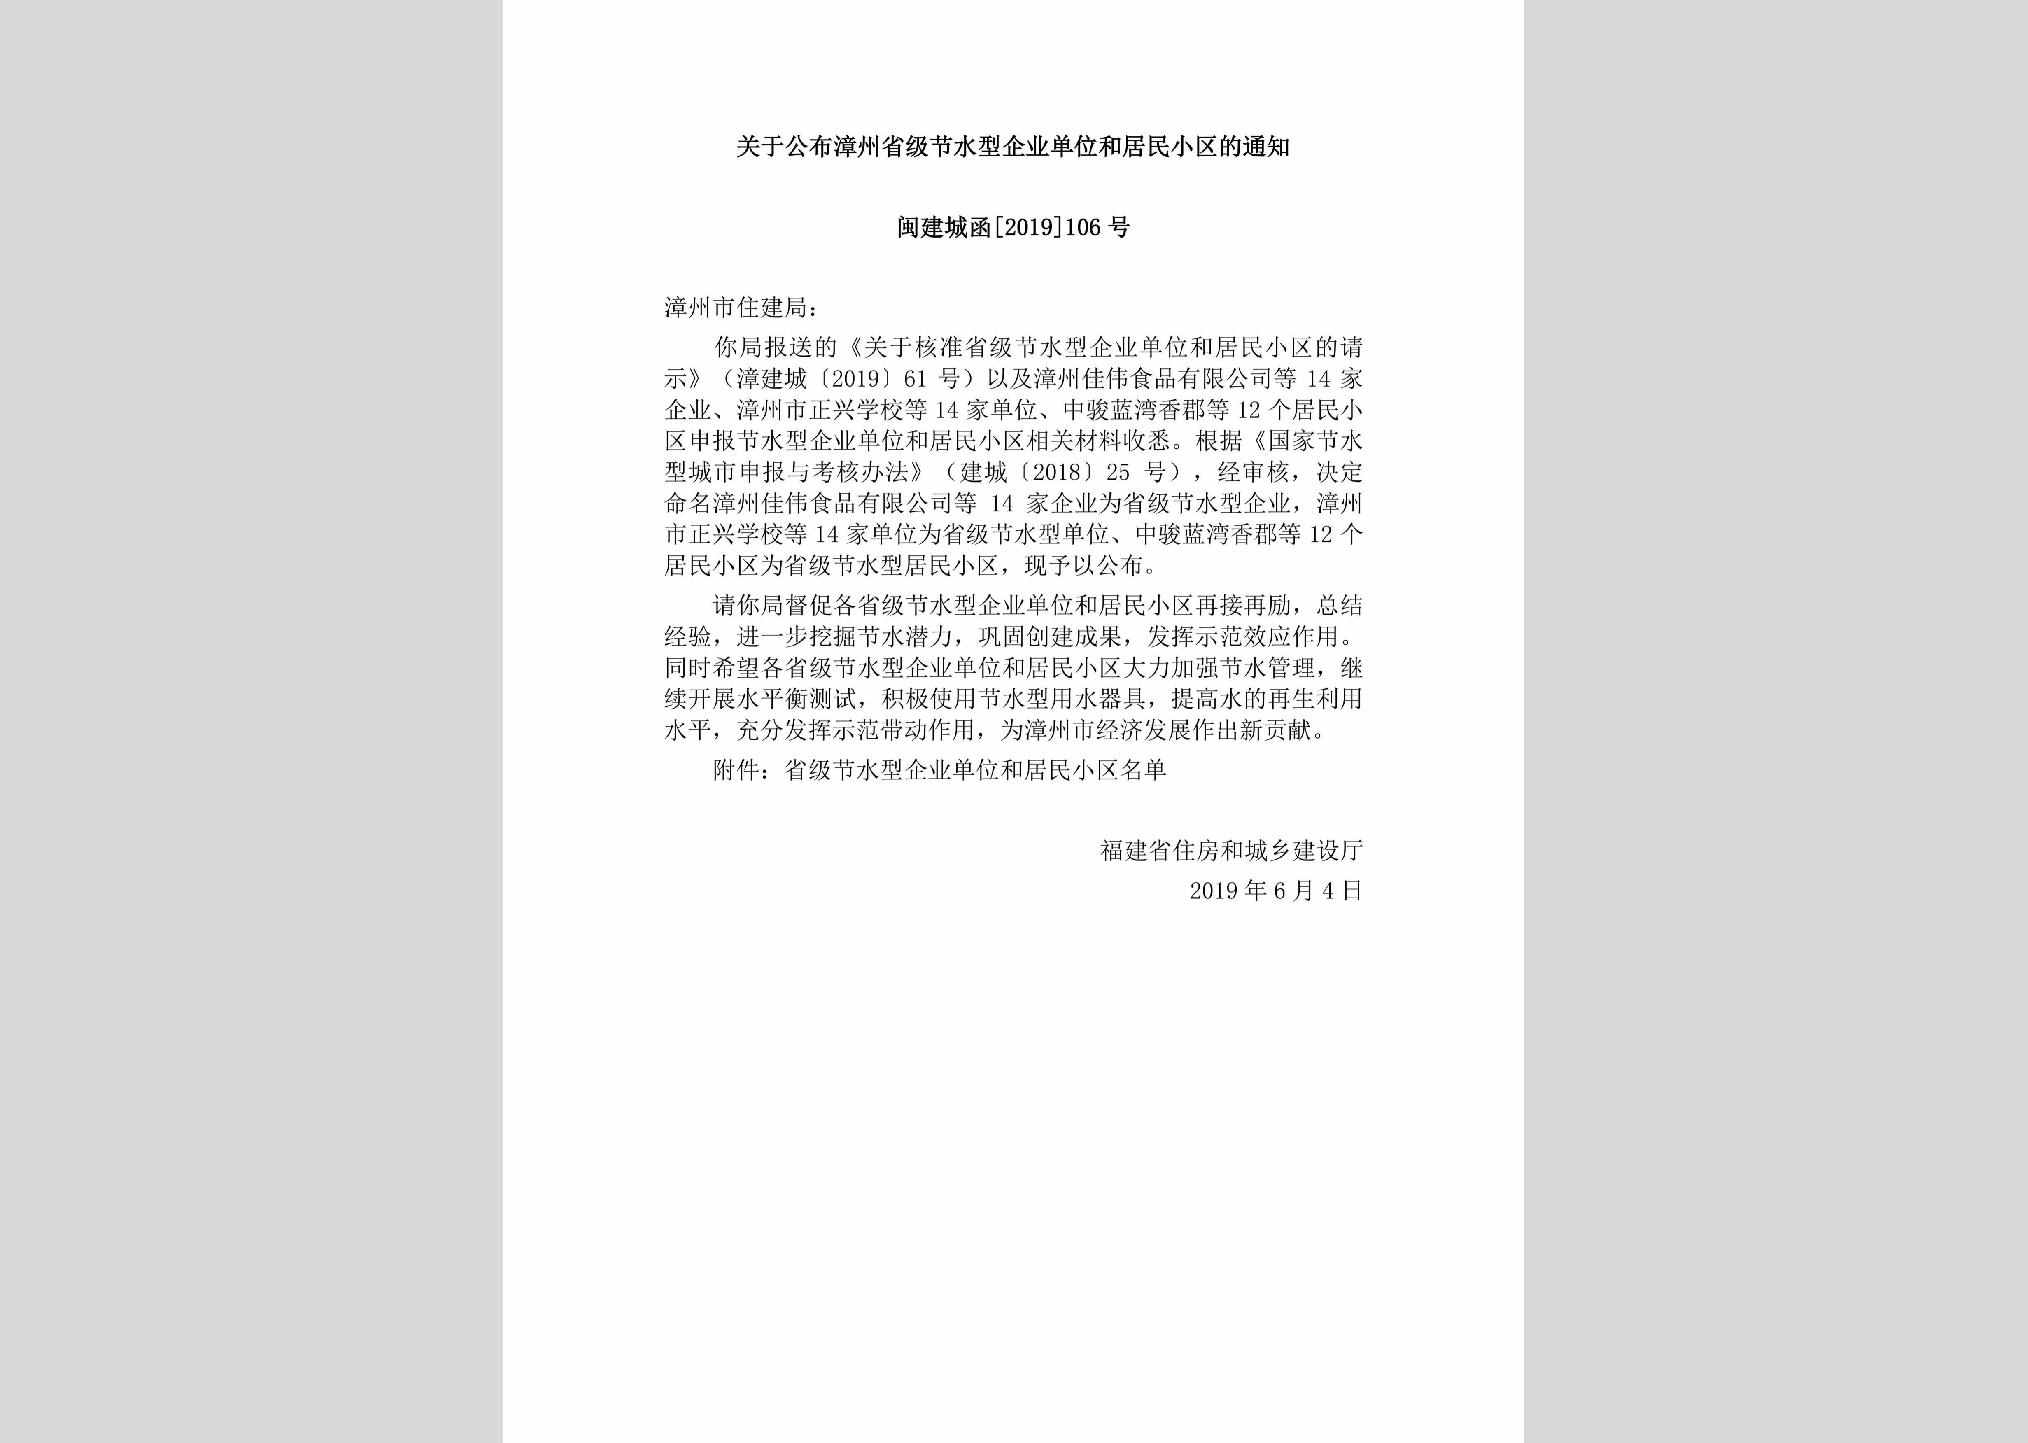 闽建城函[2019]106号：关于公布漳州省级节水型企业单位和居民小区的通知